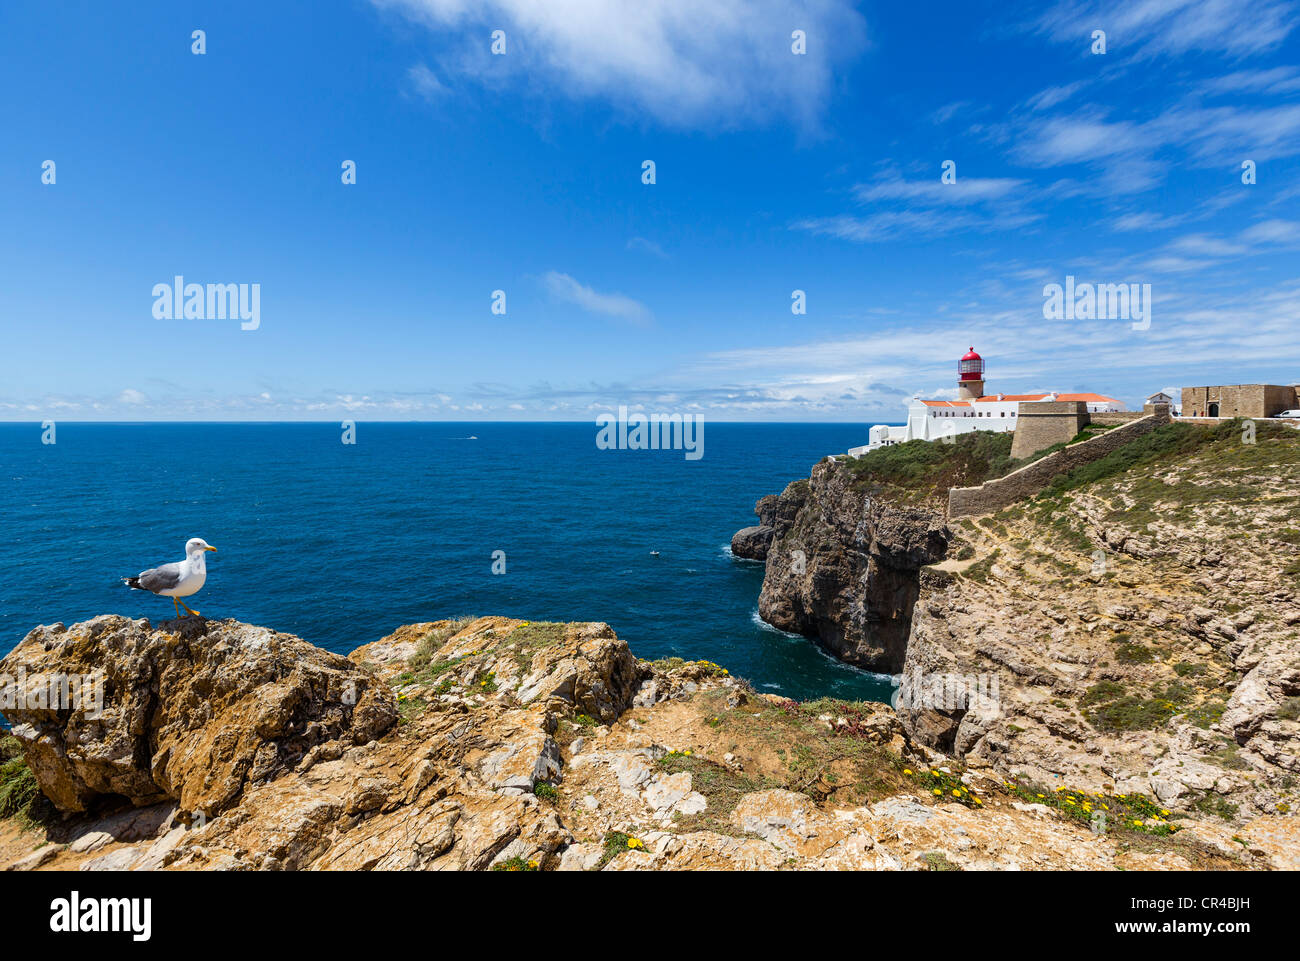 Le phare de Cabo de Sao Vicente (Cap St Vincent), la point sud-ouest sur le continent européen, Algarve, Portugal Banque D'Images